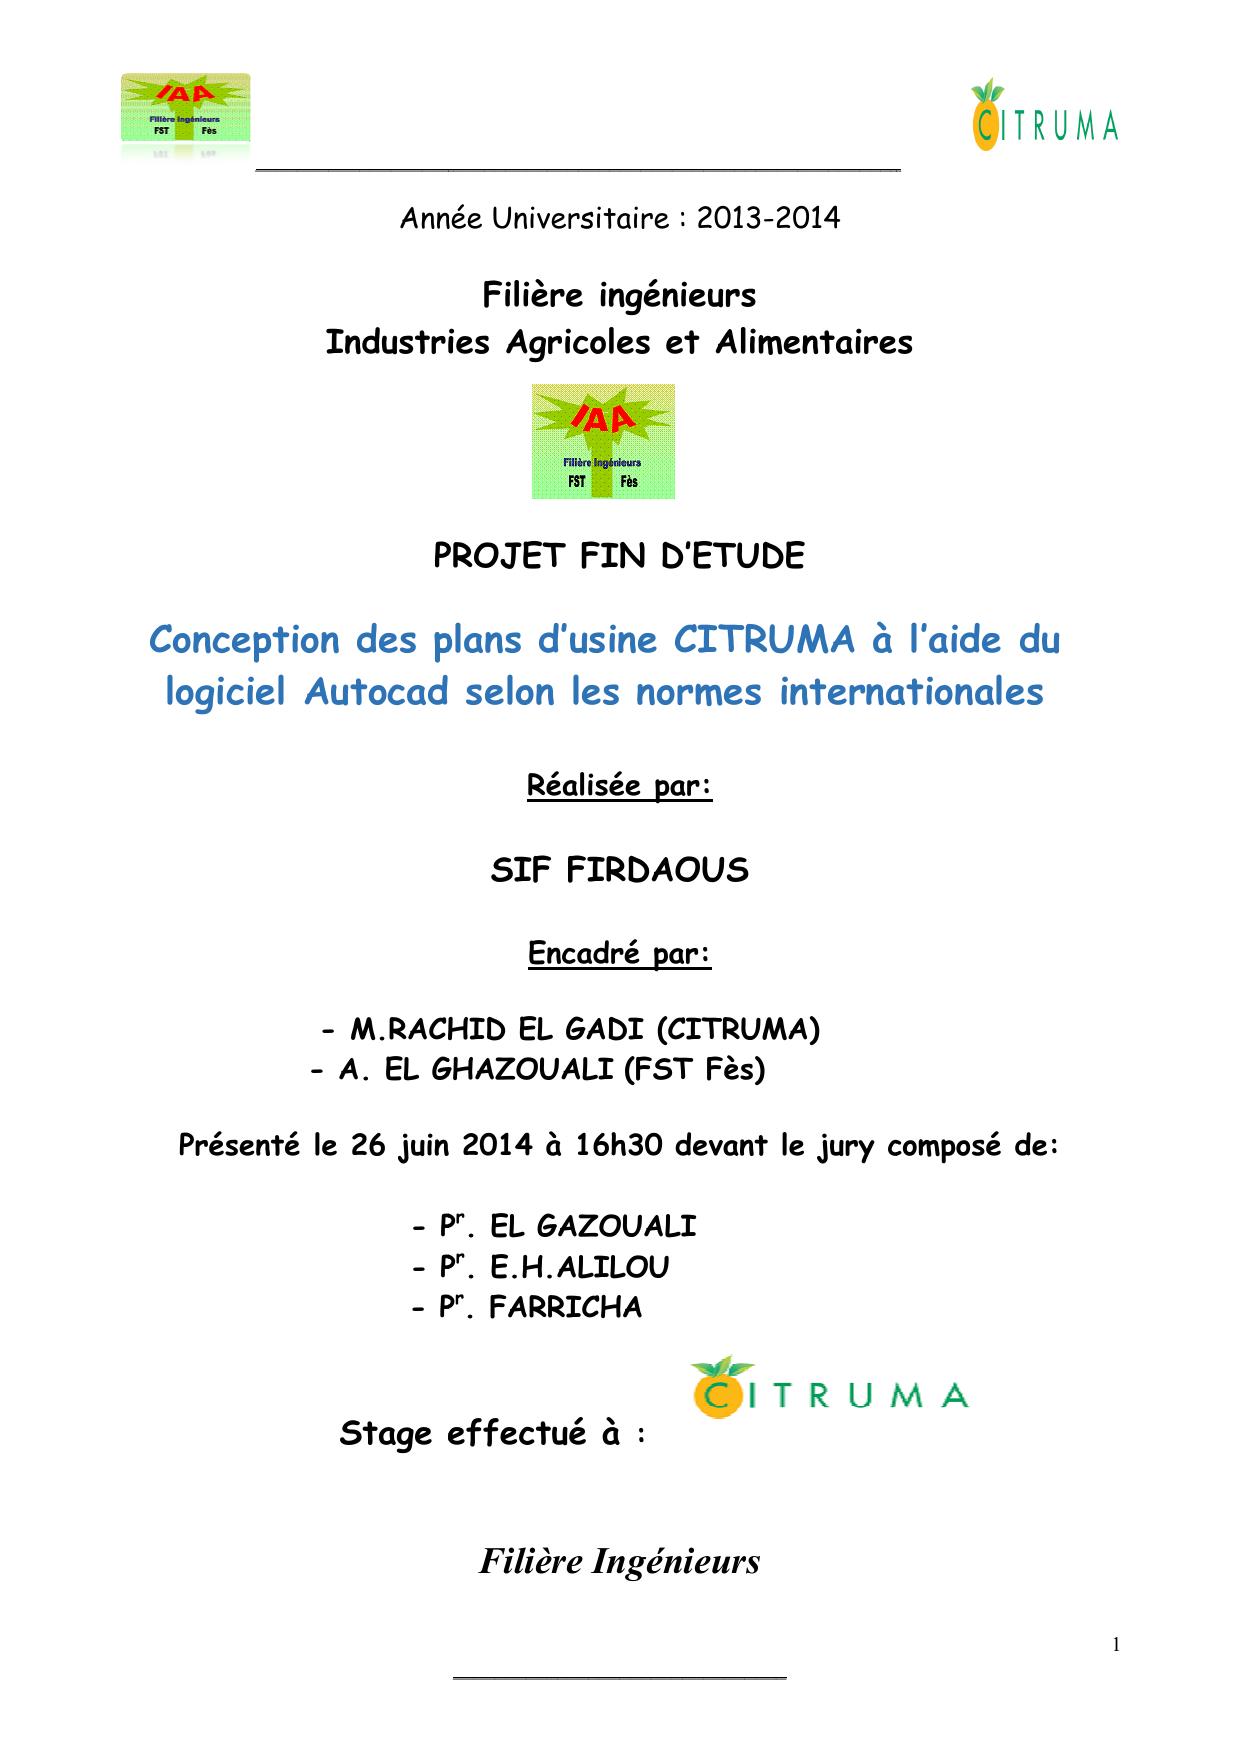 Conception des plans d’usine CITRUMA à l’aide du logiciel Autocad selon les normes internationales